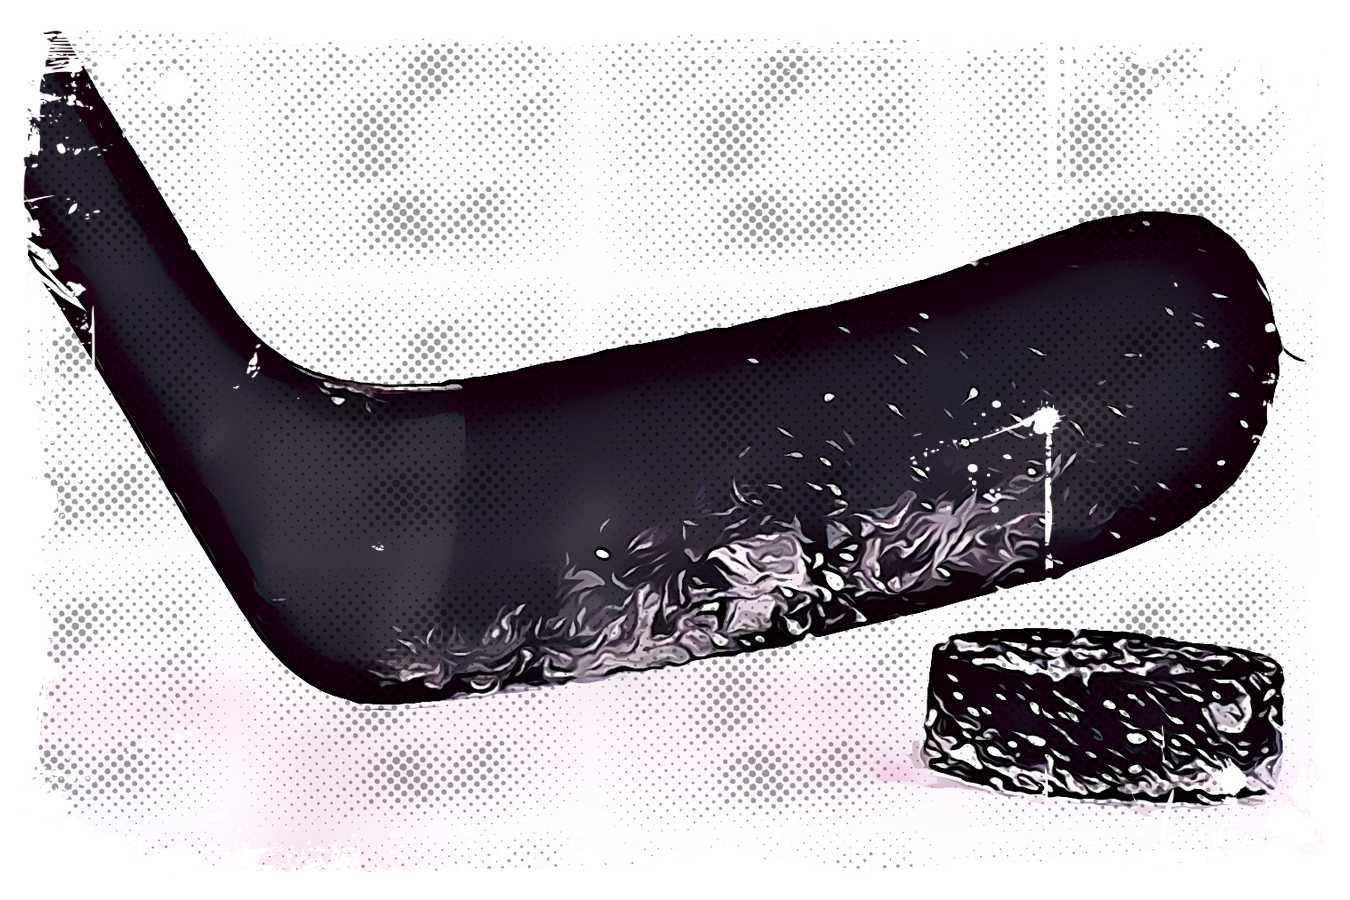 Hokej - obstawianie zakładów bukmacherskich